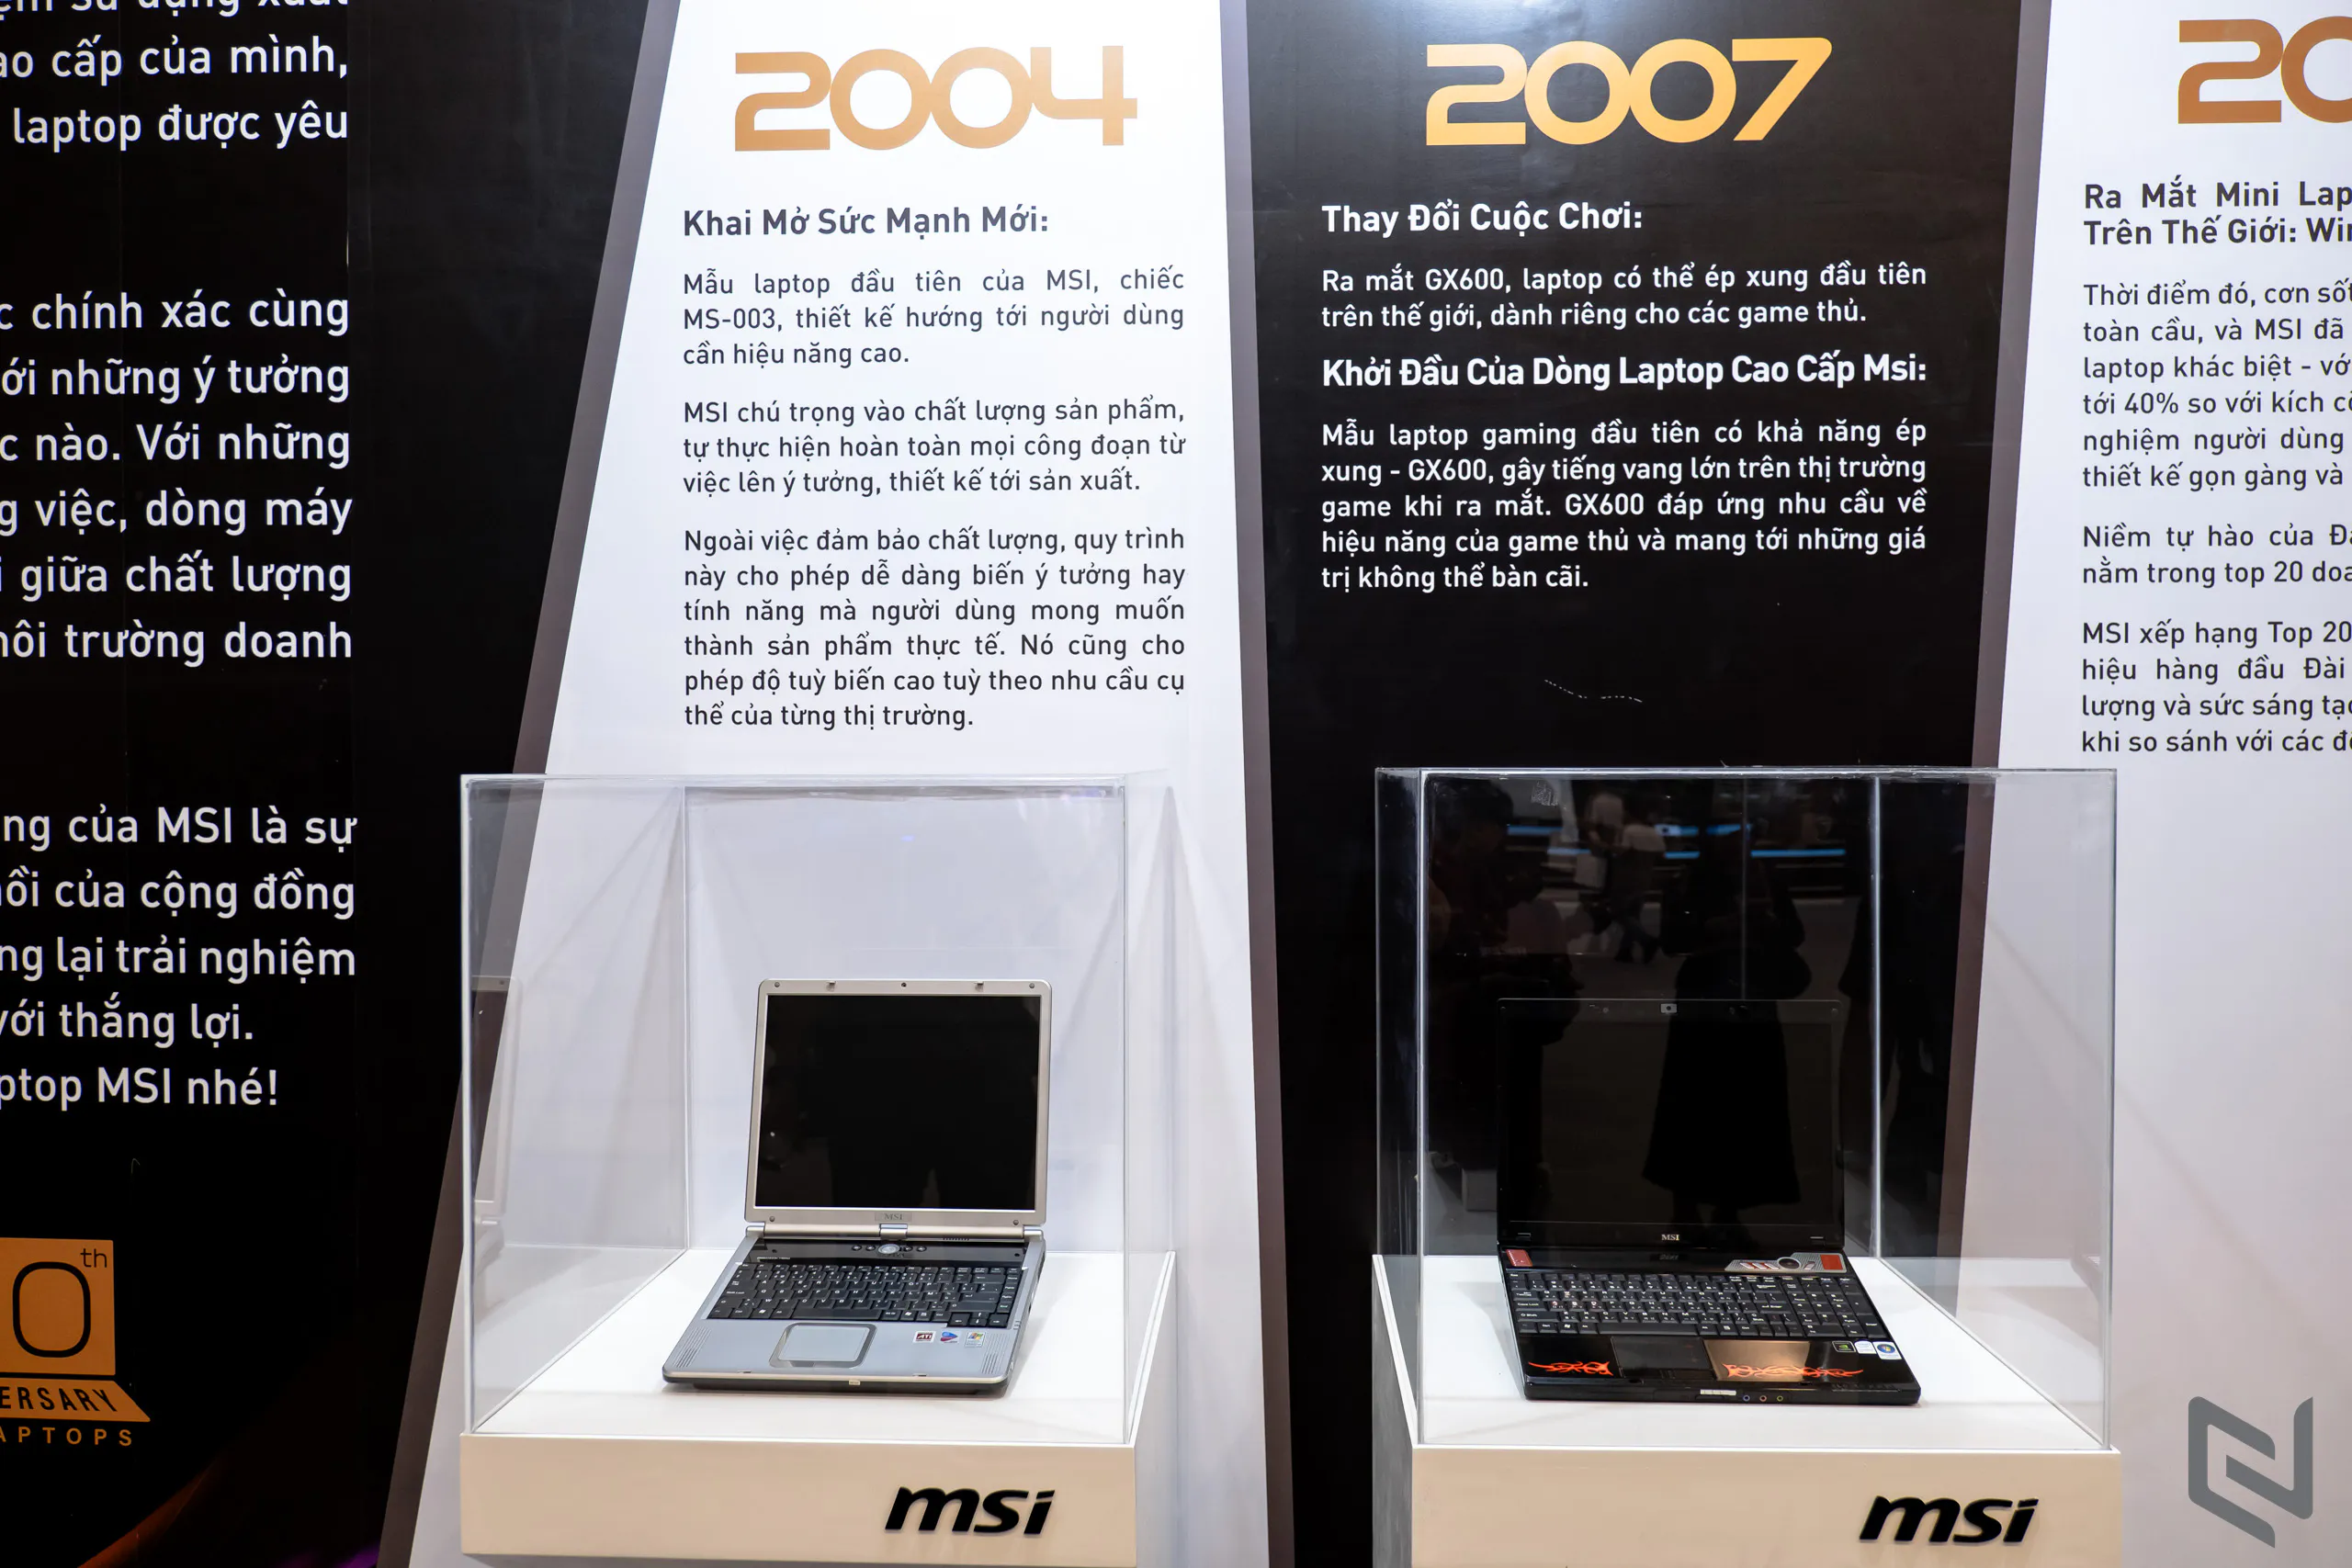 Sự kiện kỷ niệm 20 năm laptop MSI: Hành trình công nghệ đỉnh cao